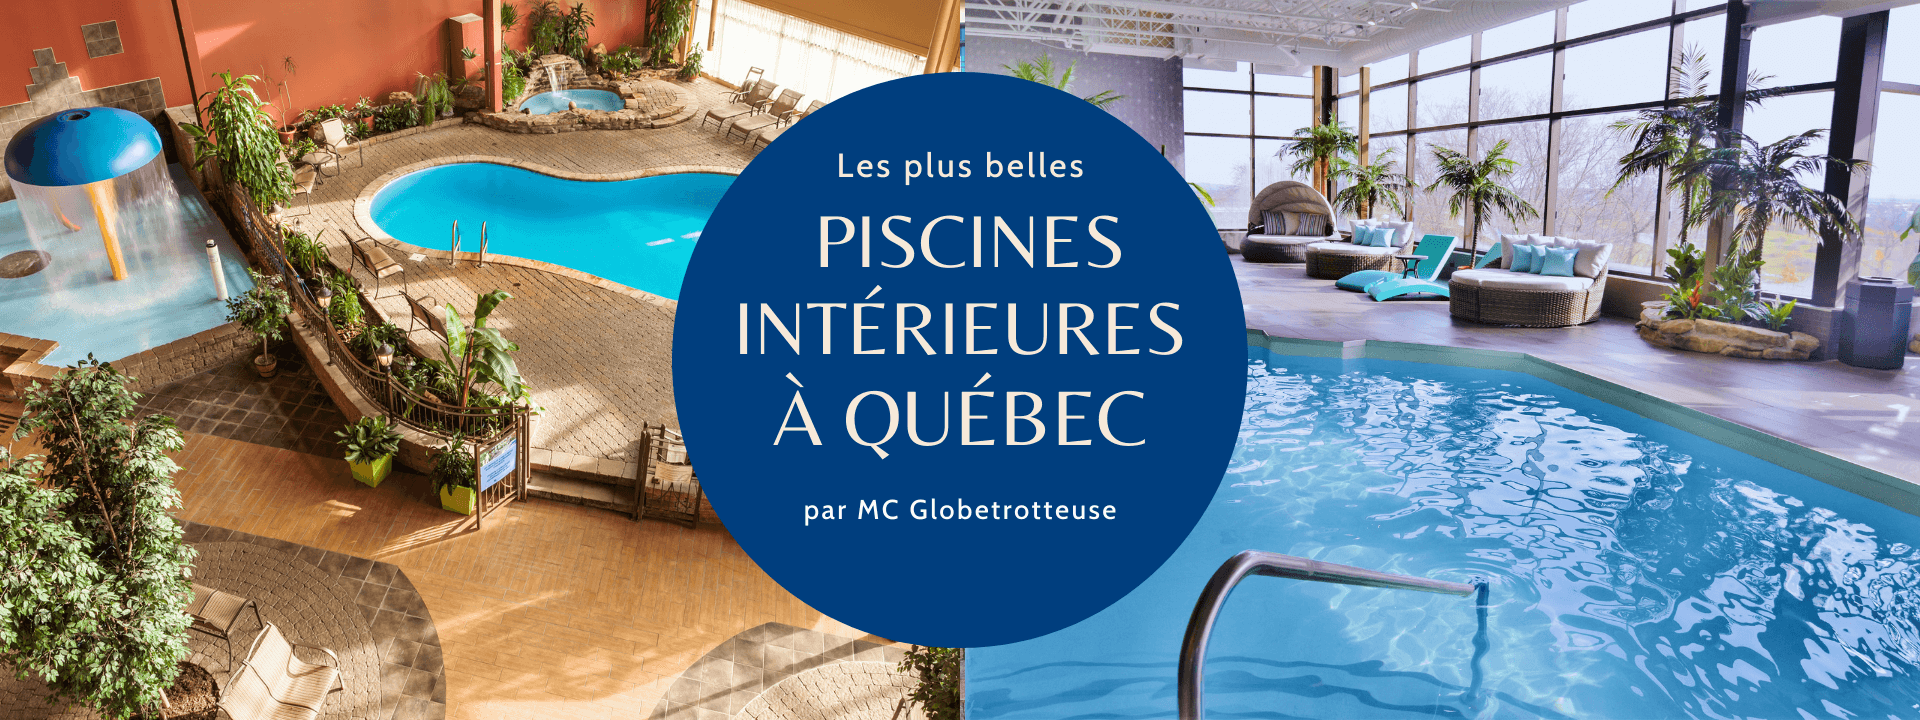 Les plus belles piscines intérieures à Québec